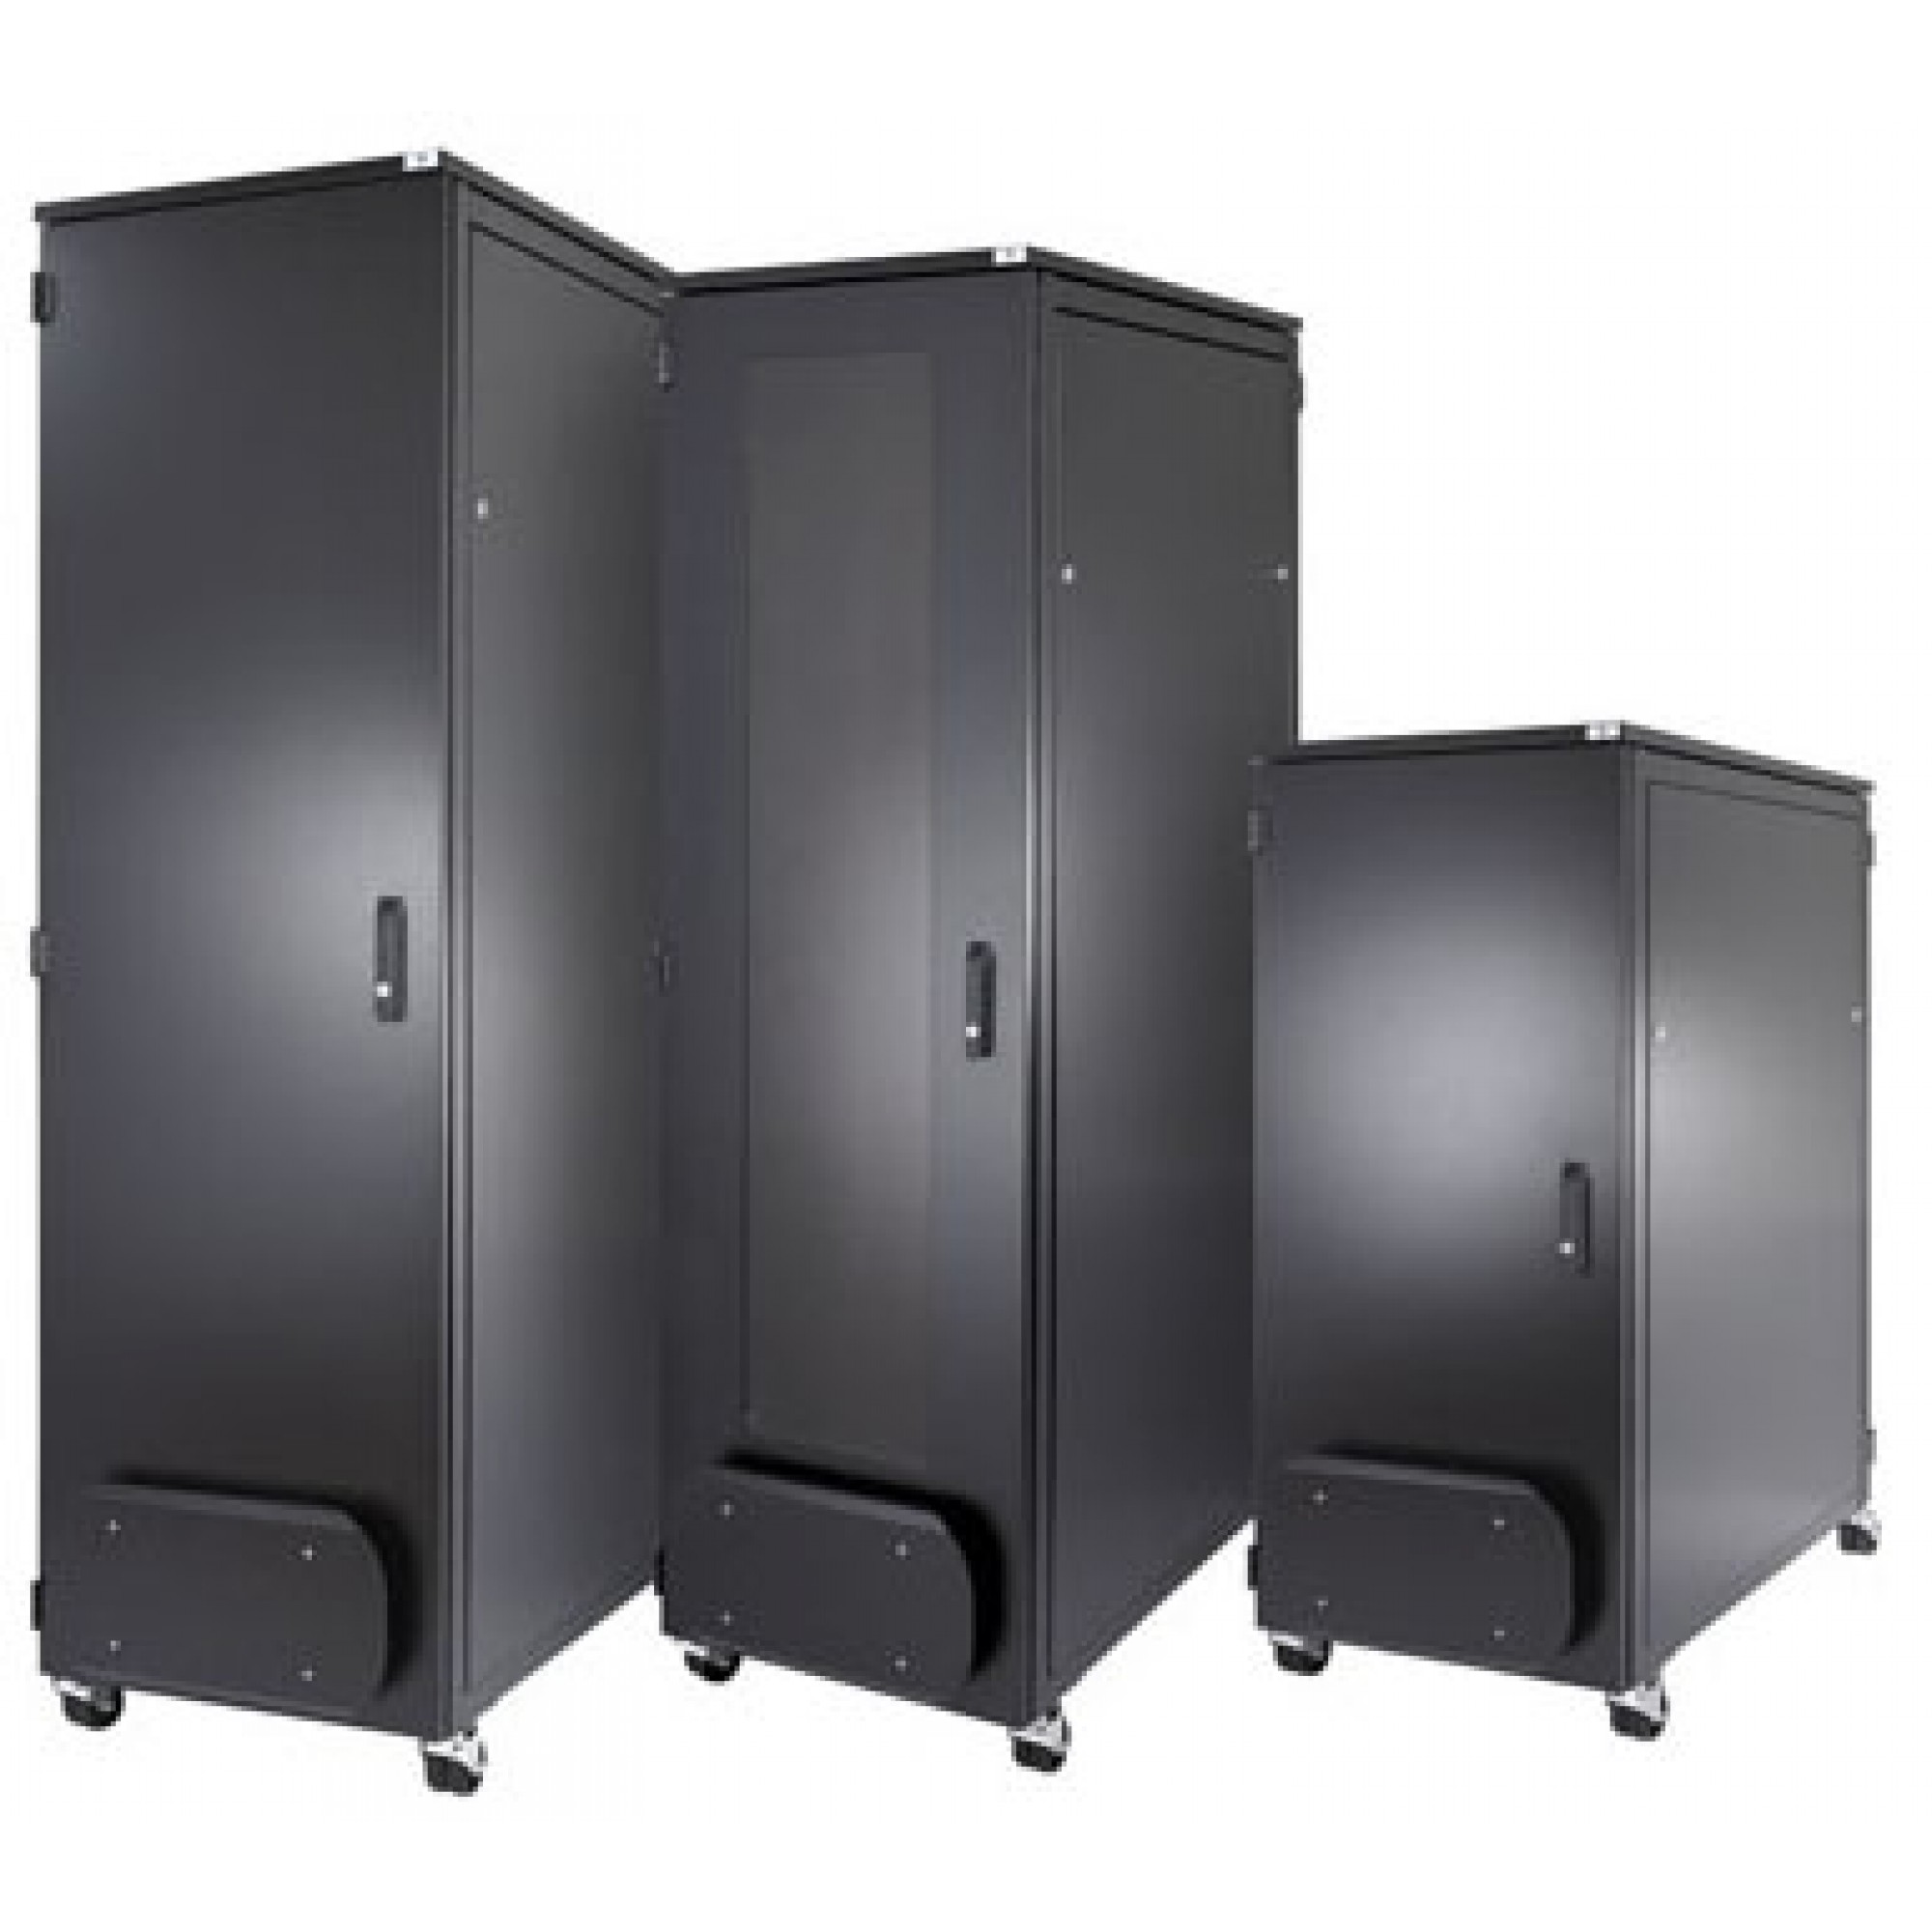 ABNET Cabinet 42U-600, gồm 2 quạt, 1 ổ cắm 6 Outlet 42U600